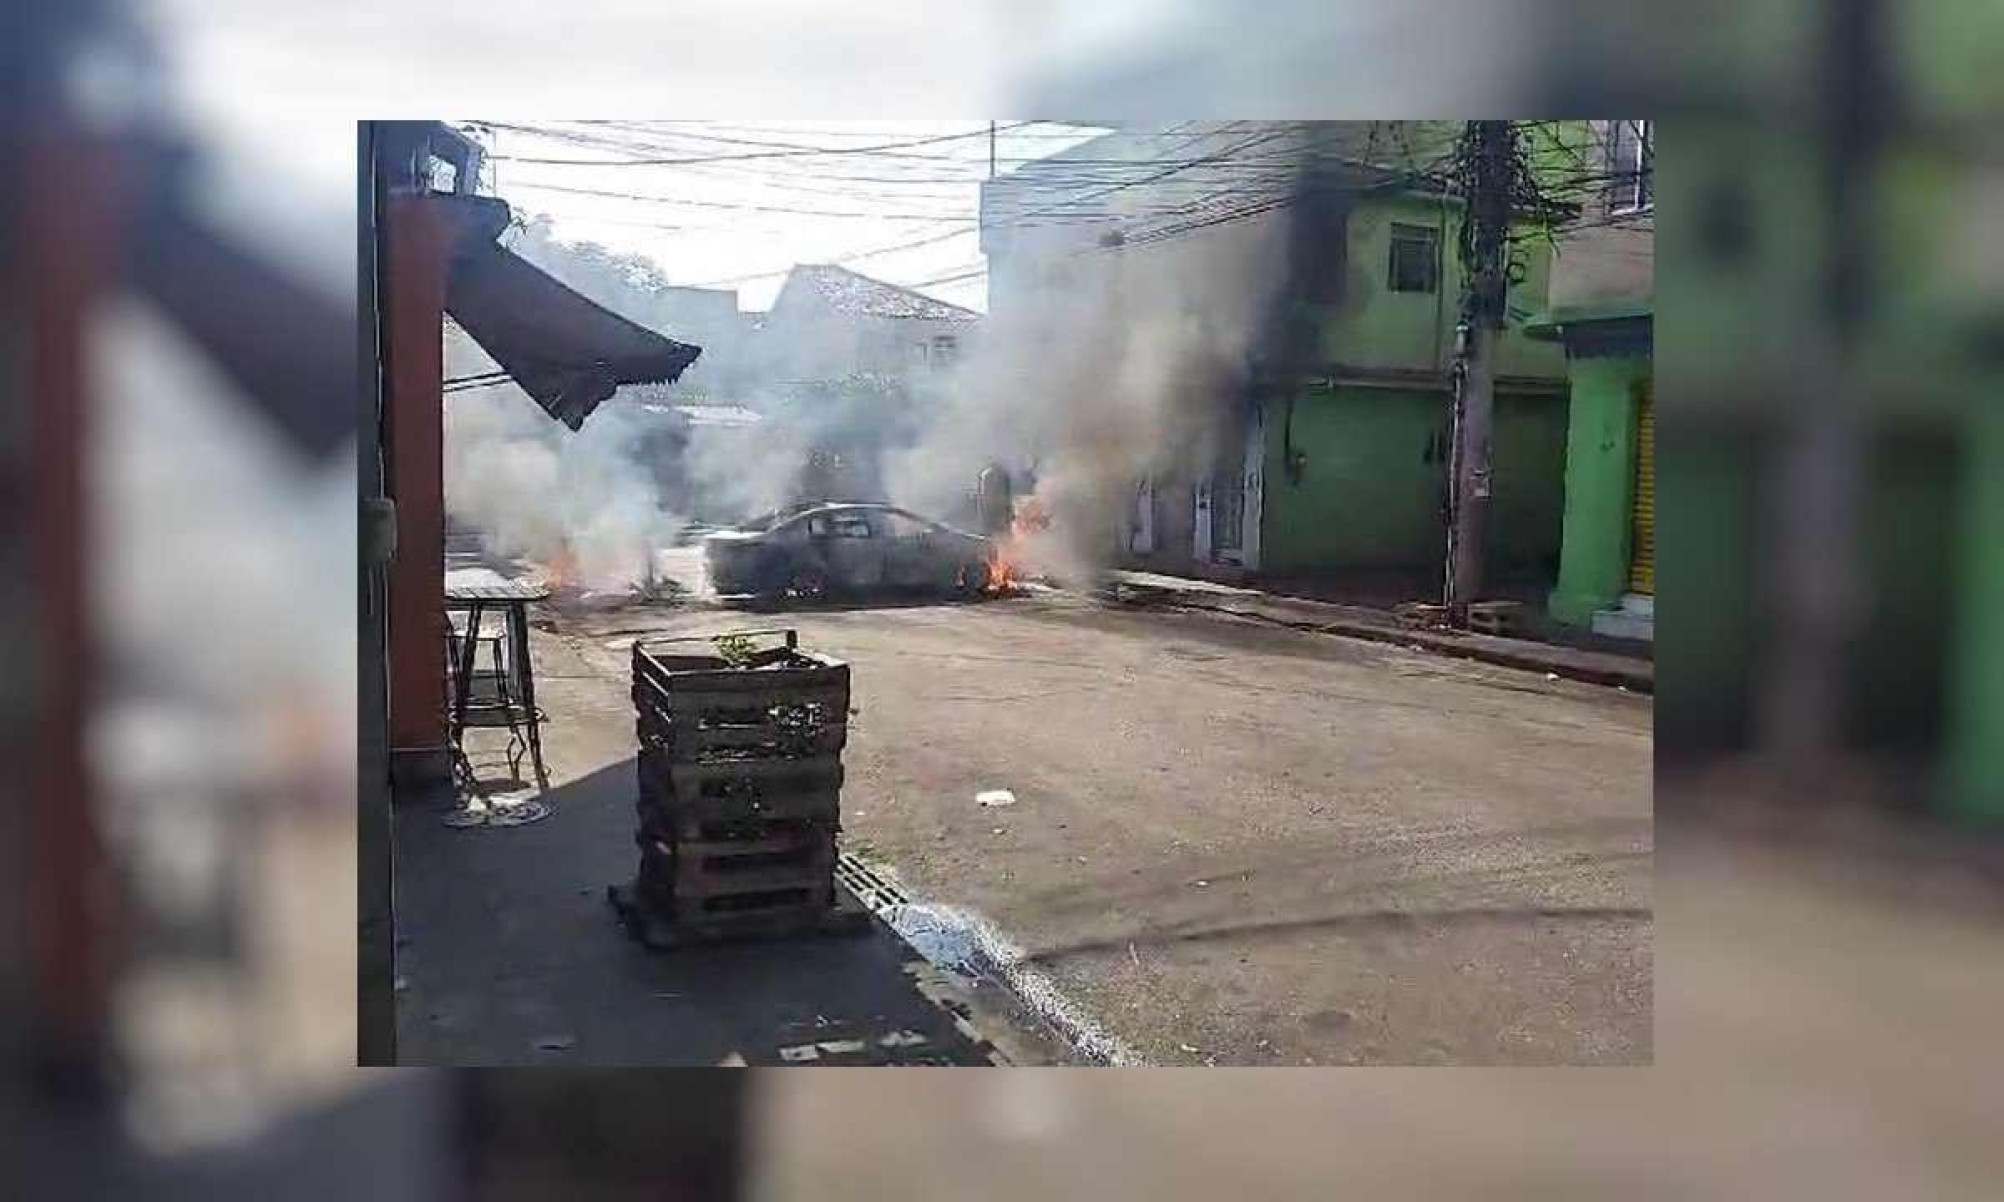 Rio tem carros e barricadas incendiados em operação da PM